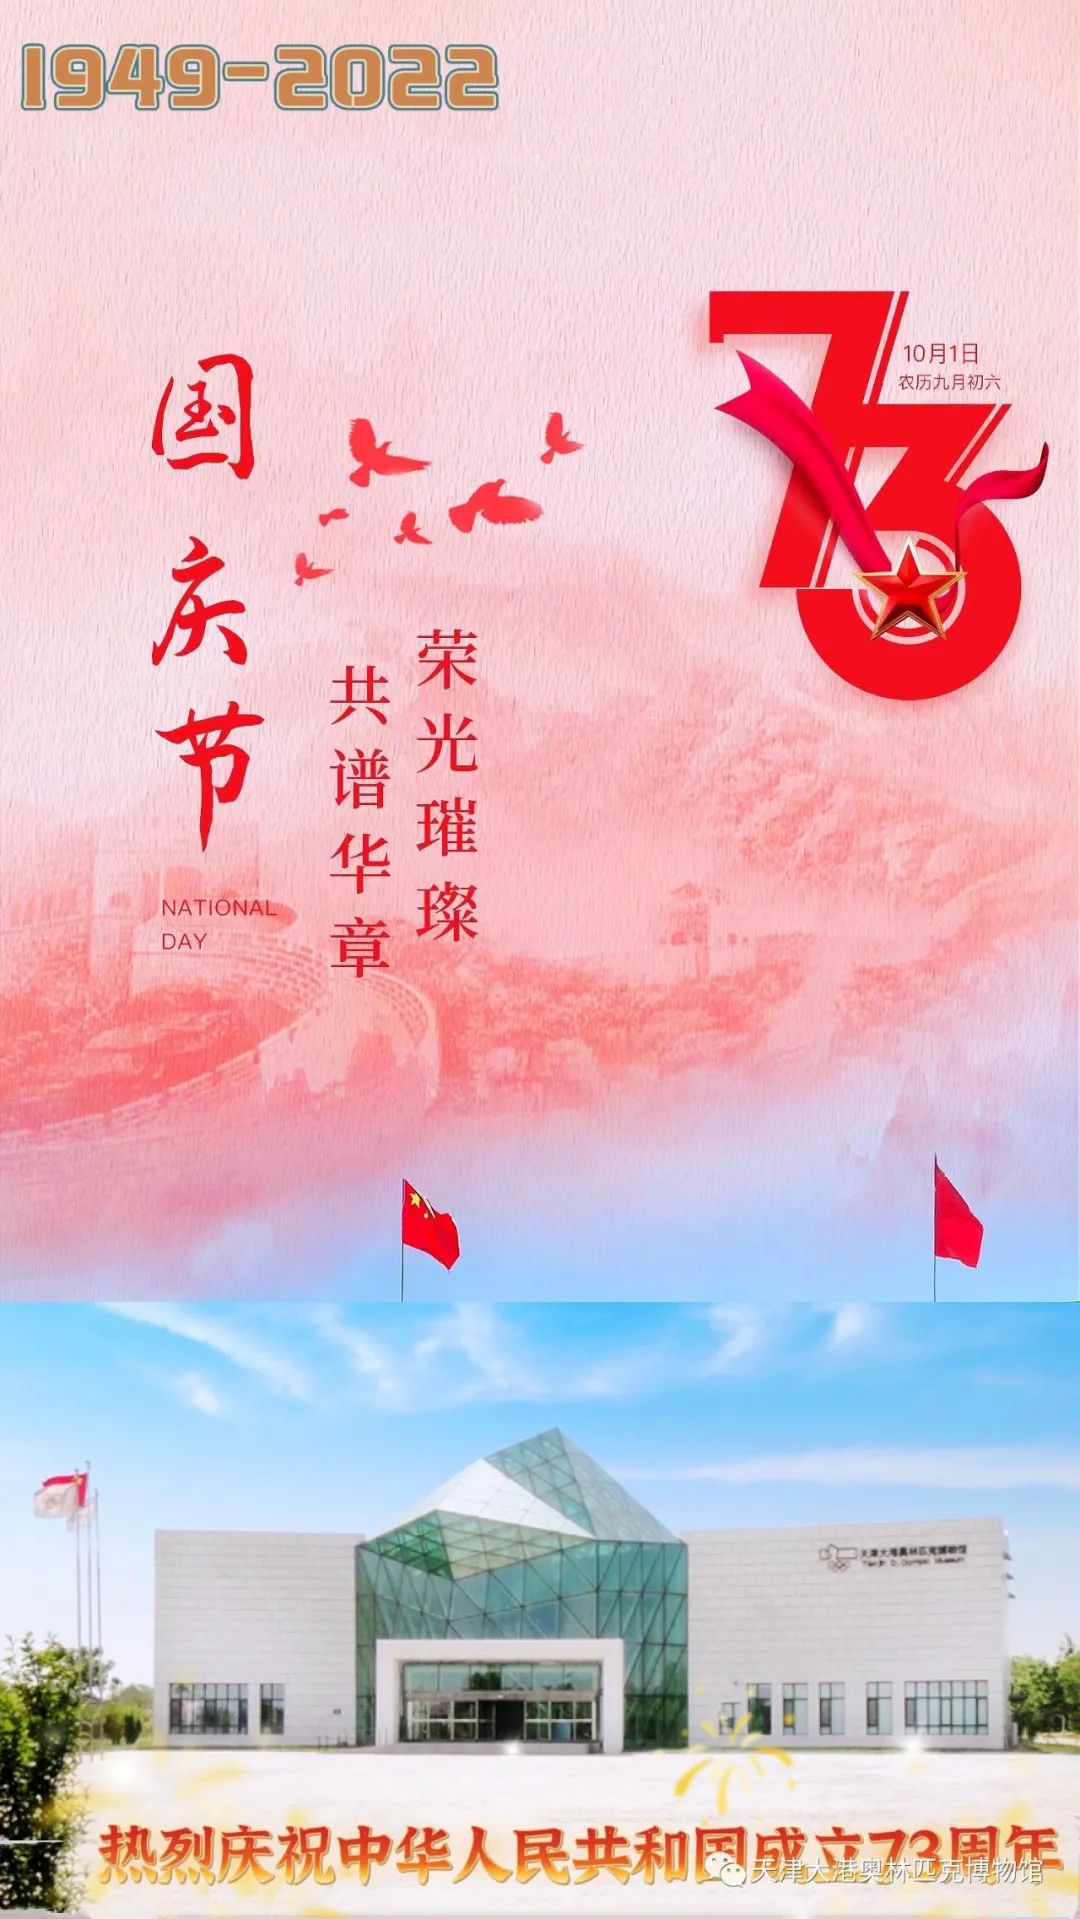 迎国庆 | 热烈庆祝中华人民共和国成立73周年！